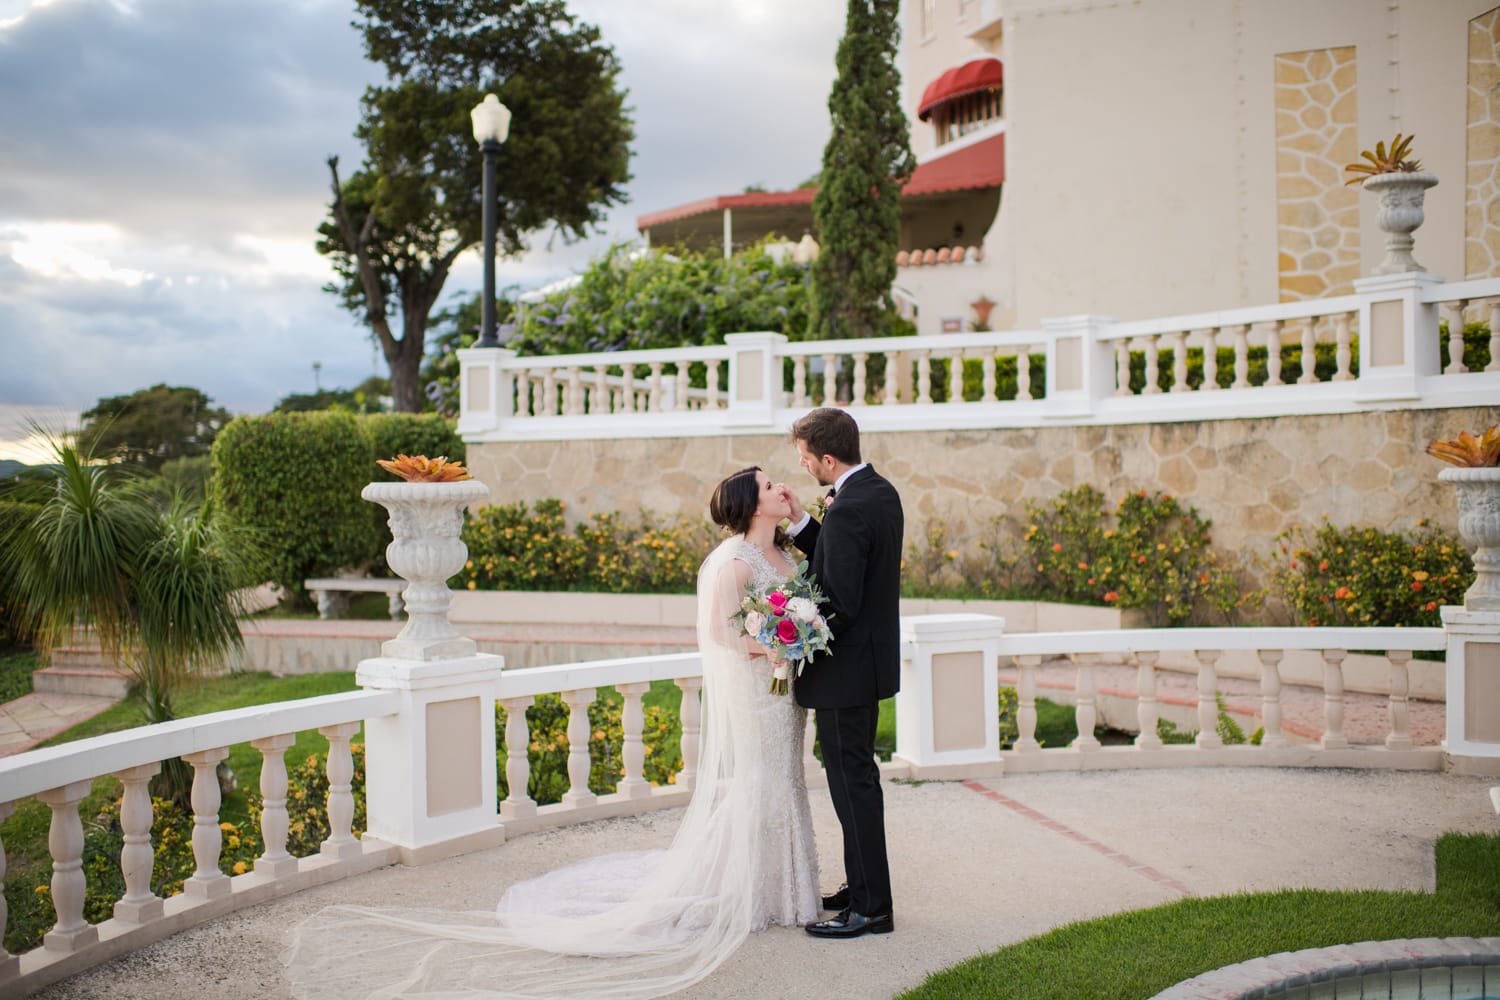 Castillo Serralles wedding photography by Puerto Rico photographer Camille Fontanez